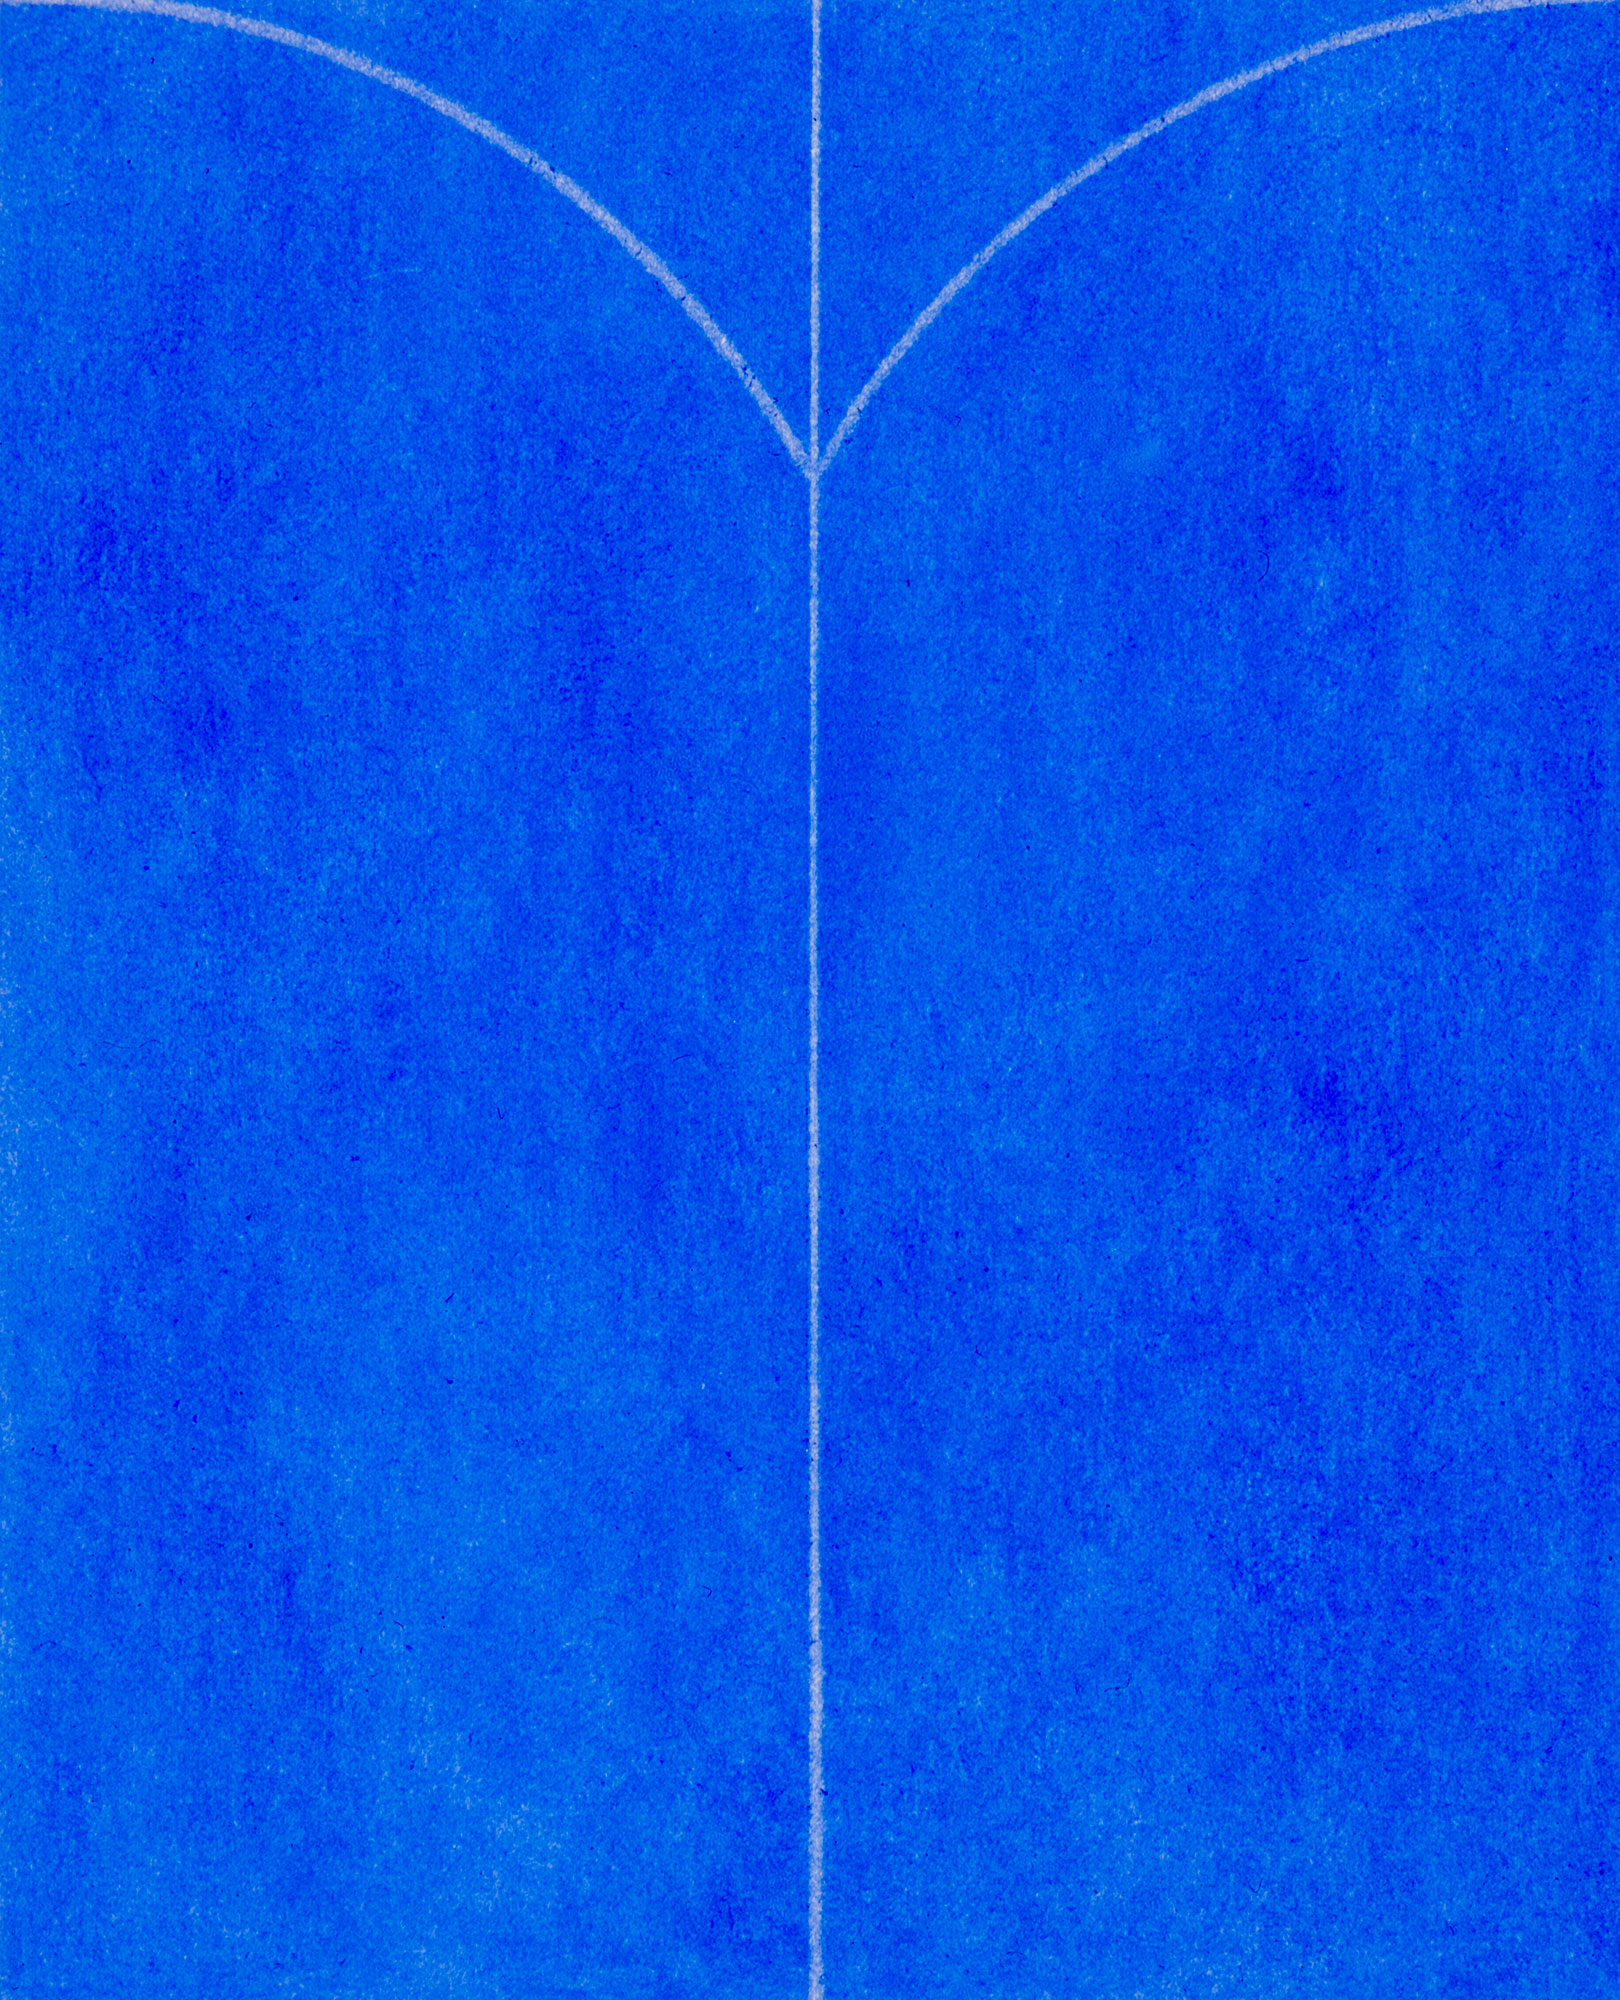 Kenneth Dingwall, Serenity, 1996, chalk on paper, 28cm x 23cm